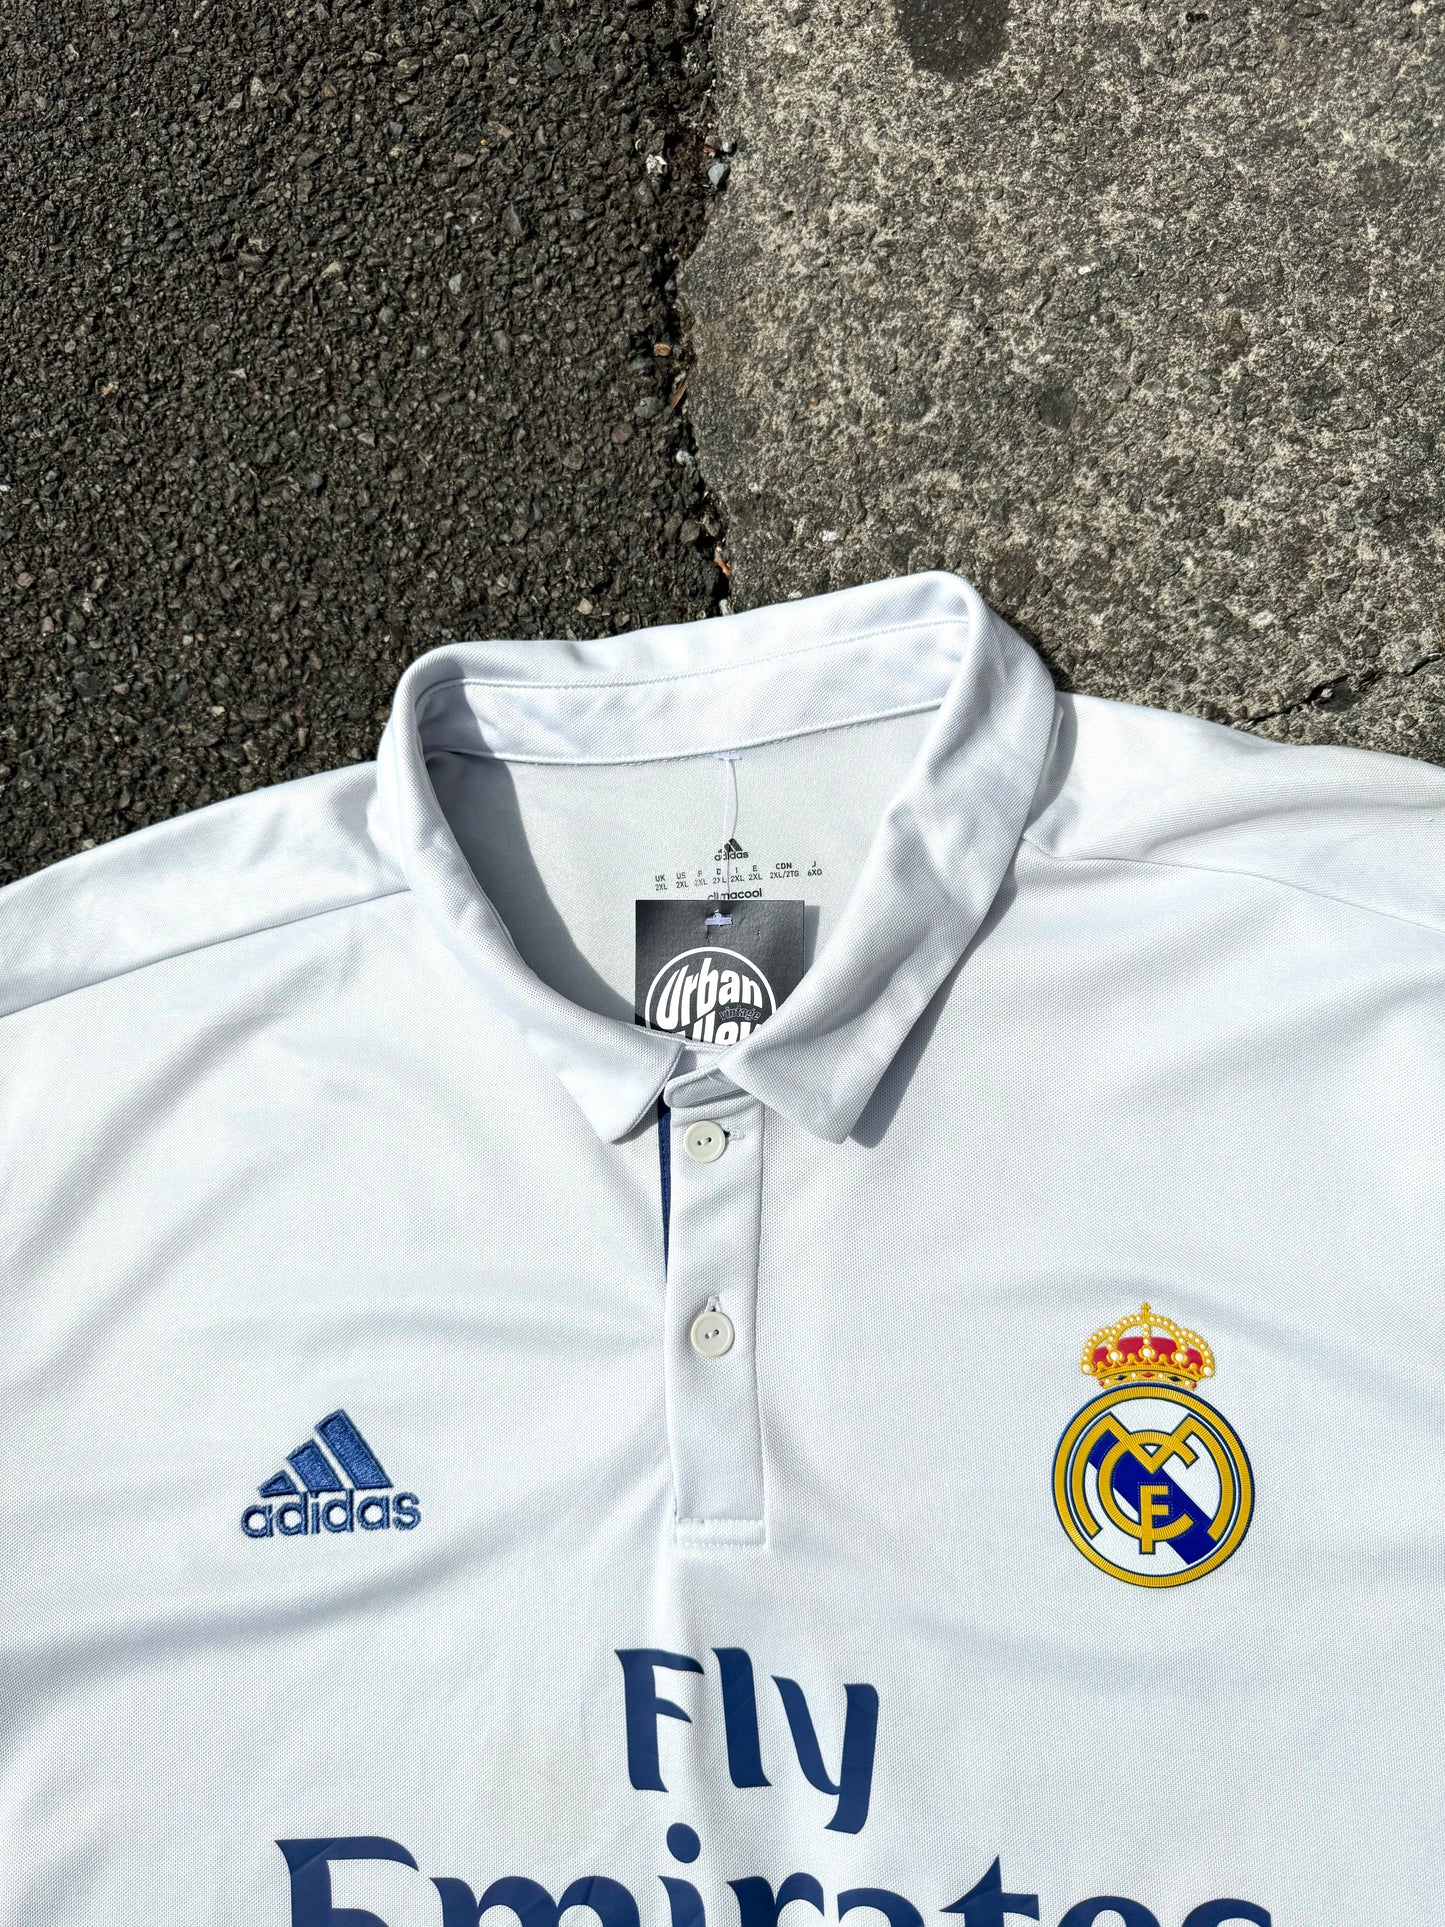 White Adidas Real Madrid F.C Football Shirt